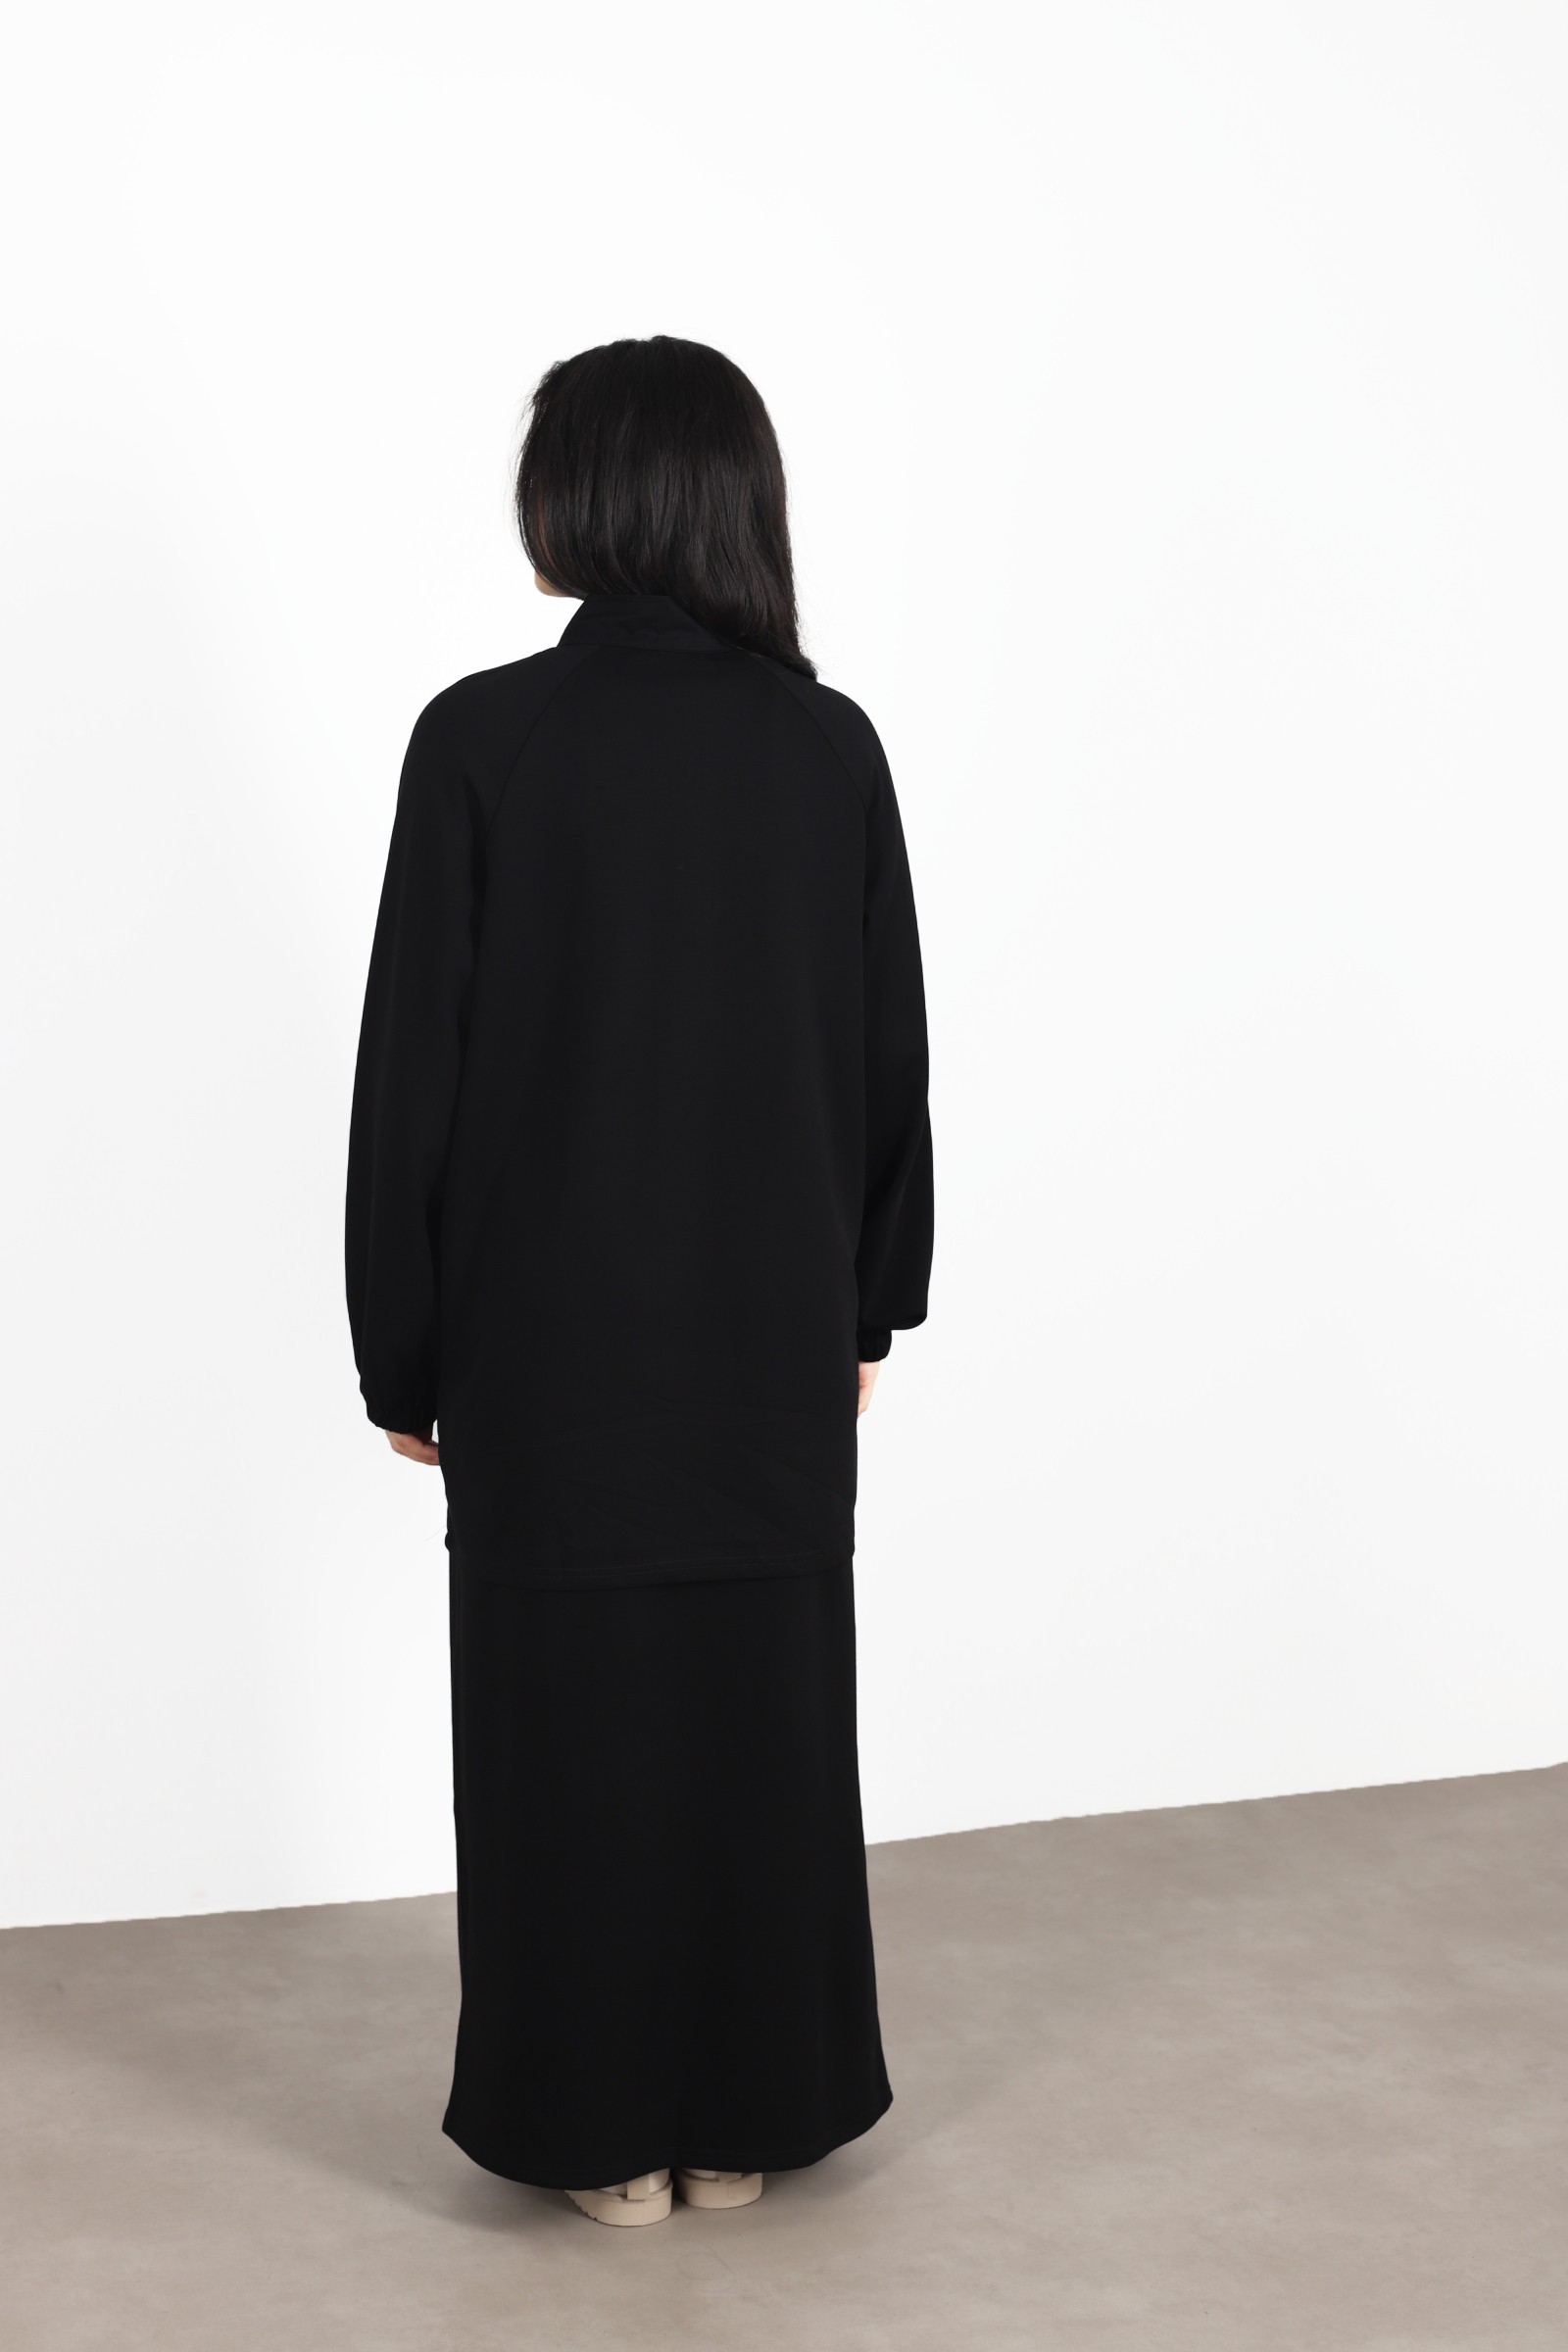 Set woman veiled skirt black , hijeb woman 2023